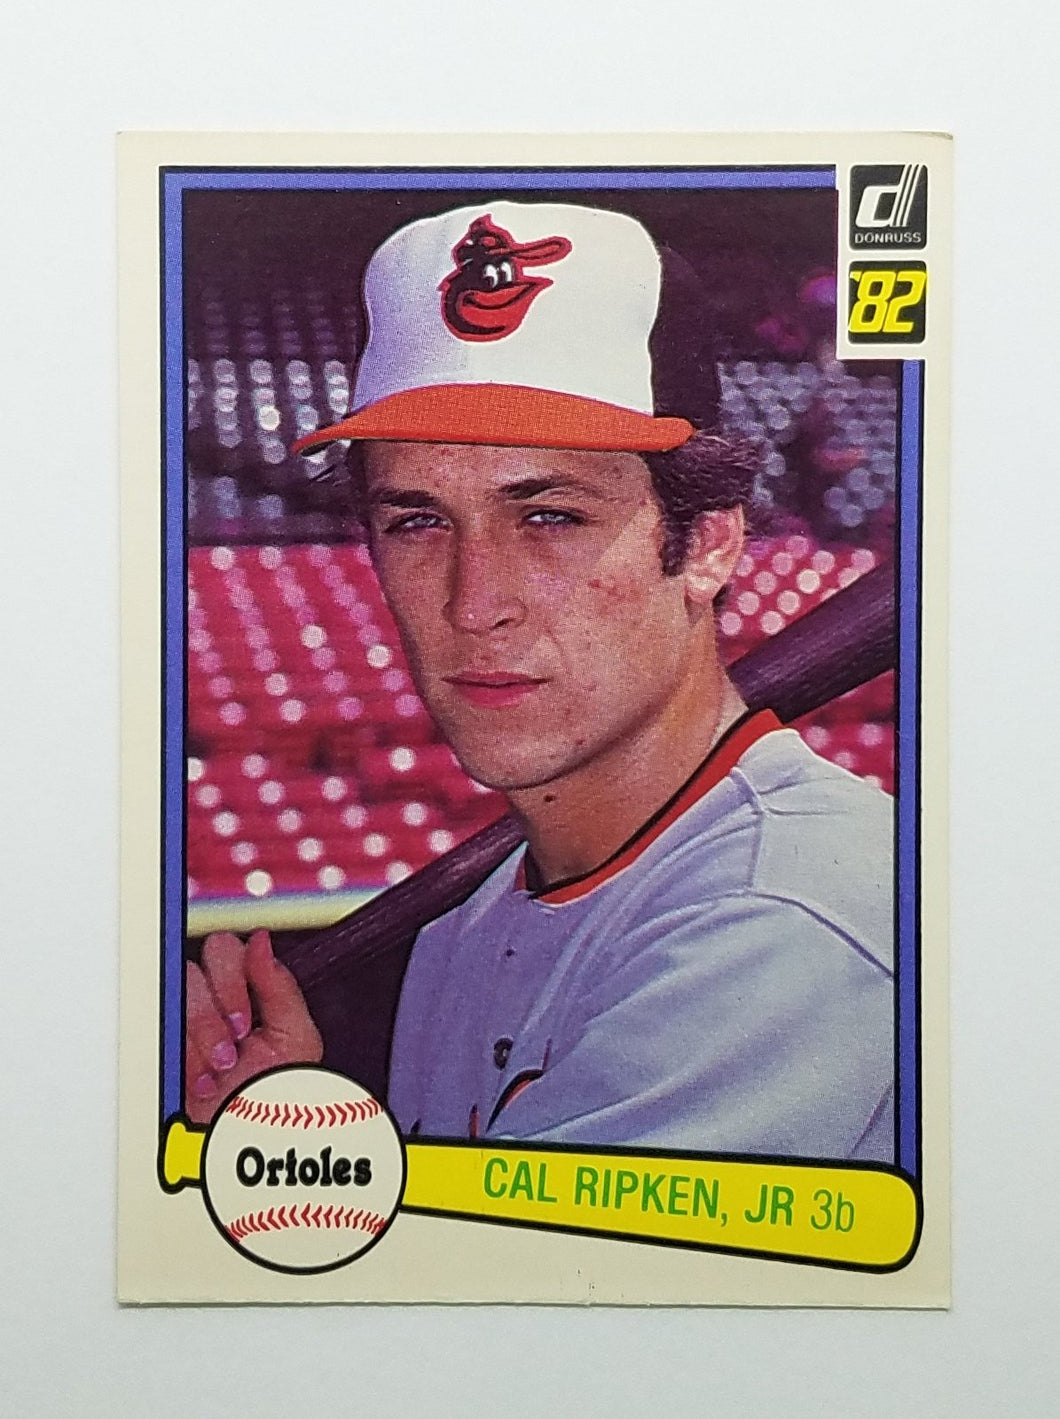 1982 Donruss Cal Ripken Jr. Baseball Rookie Card